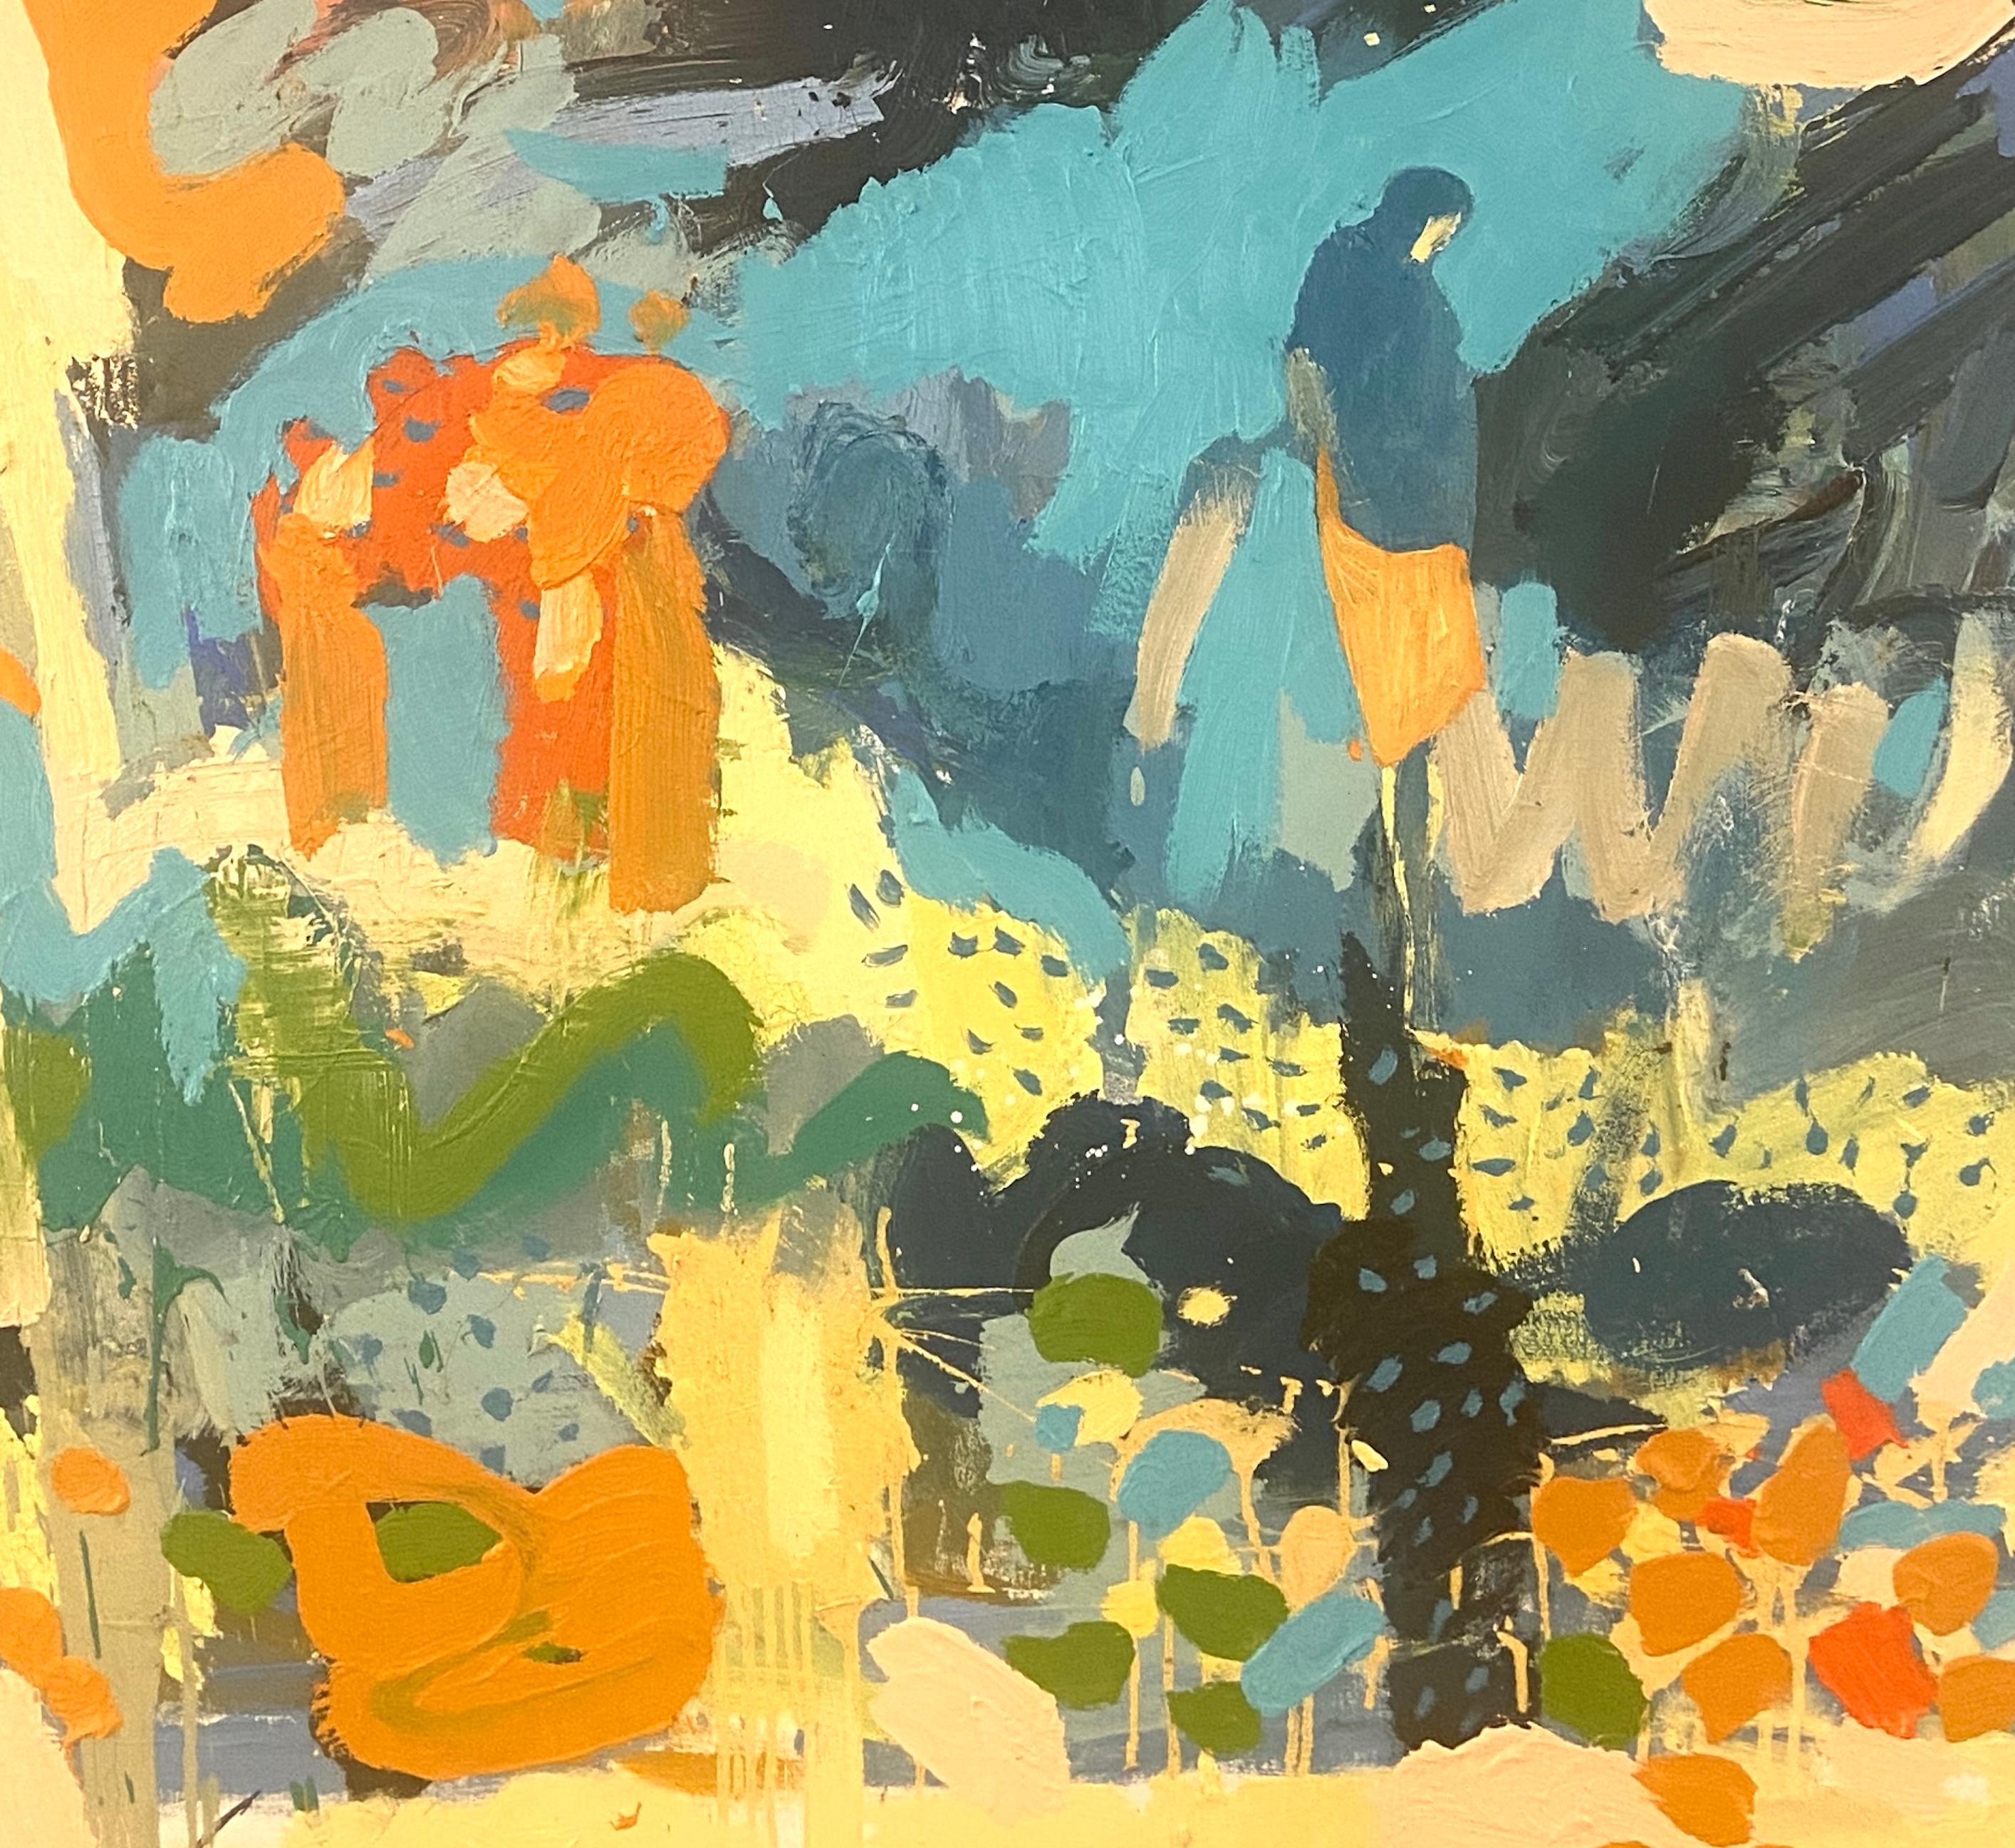 Starlit Wüstenhimmel, zeitgenössisches expressionistisches Ölgemälde – Painting von Paul wadsworth